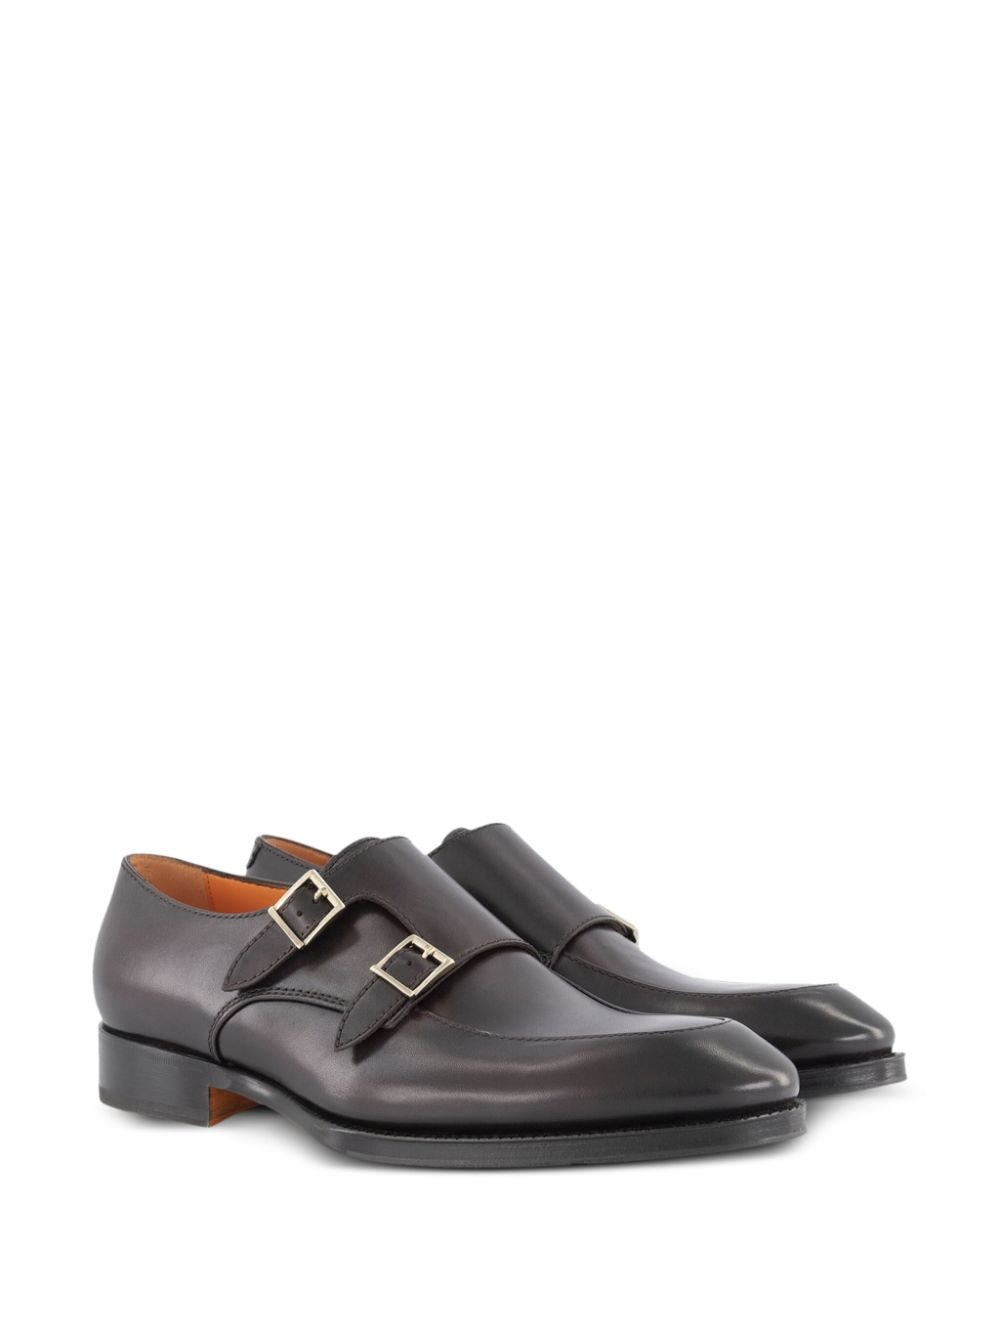 Santoni leather monk shoes - Bruin